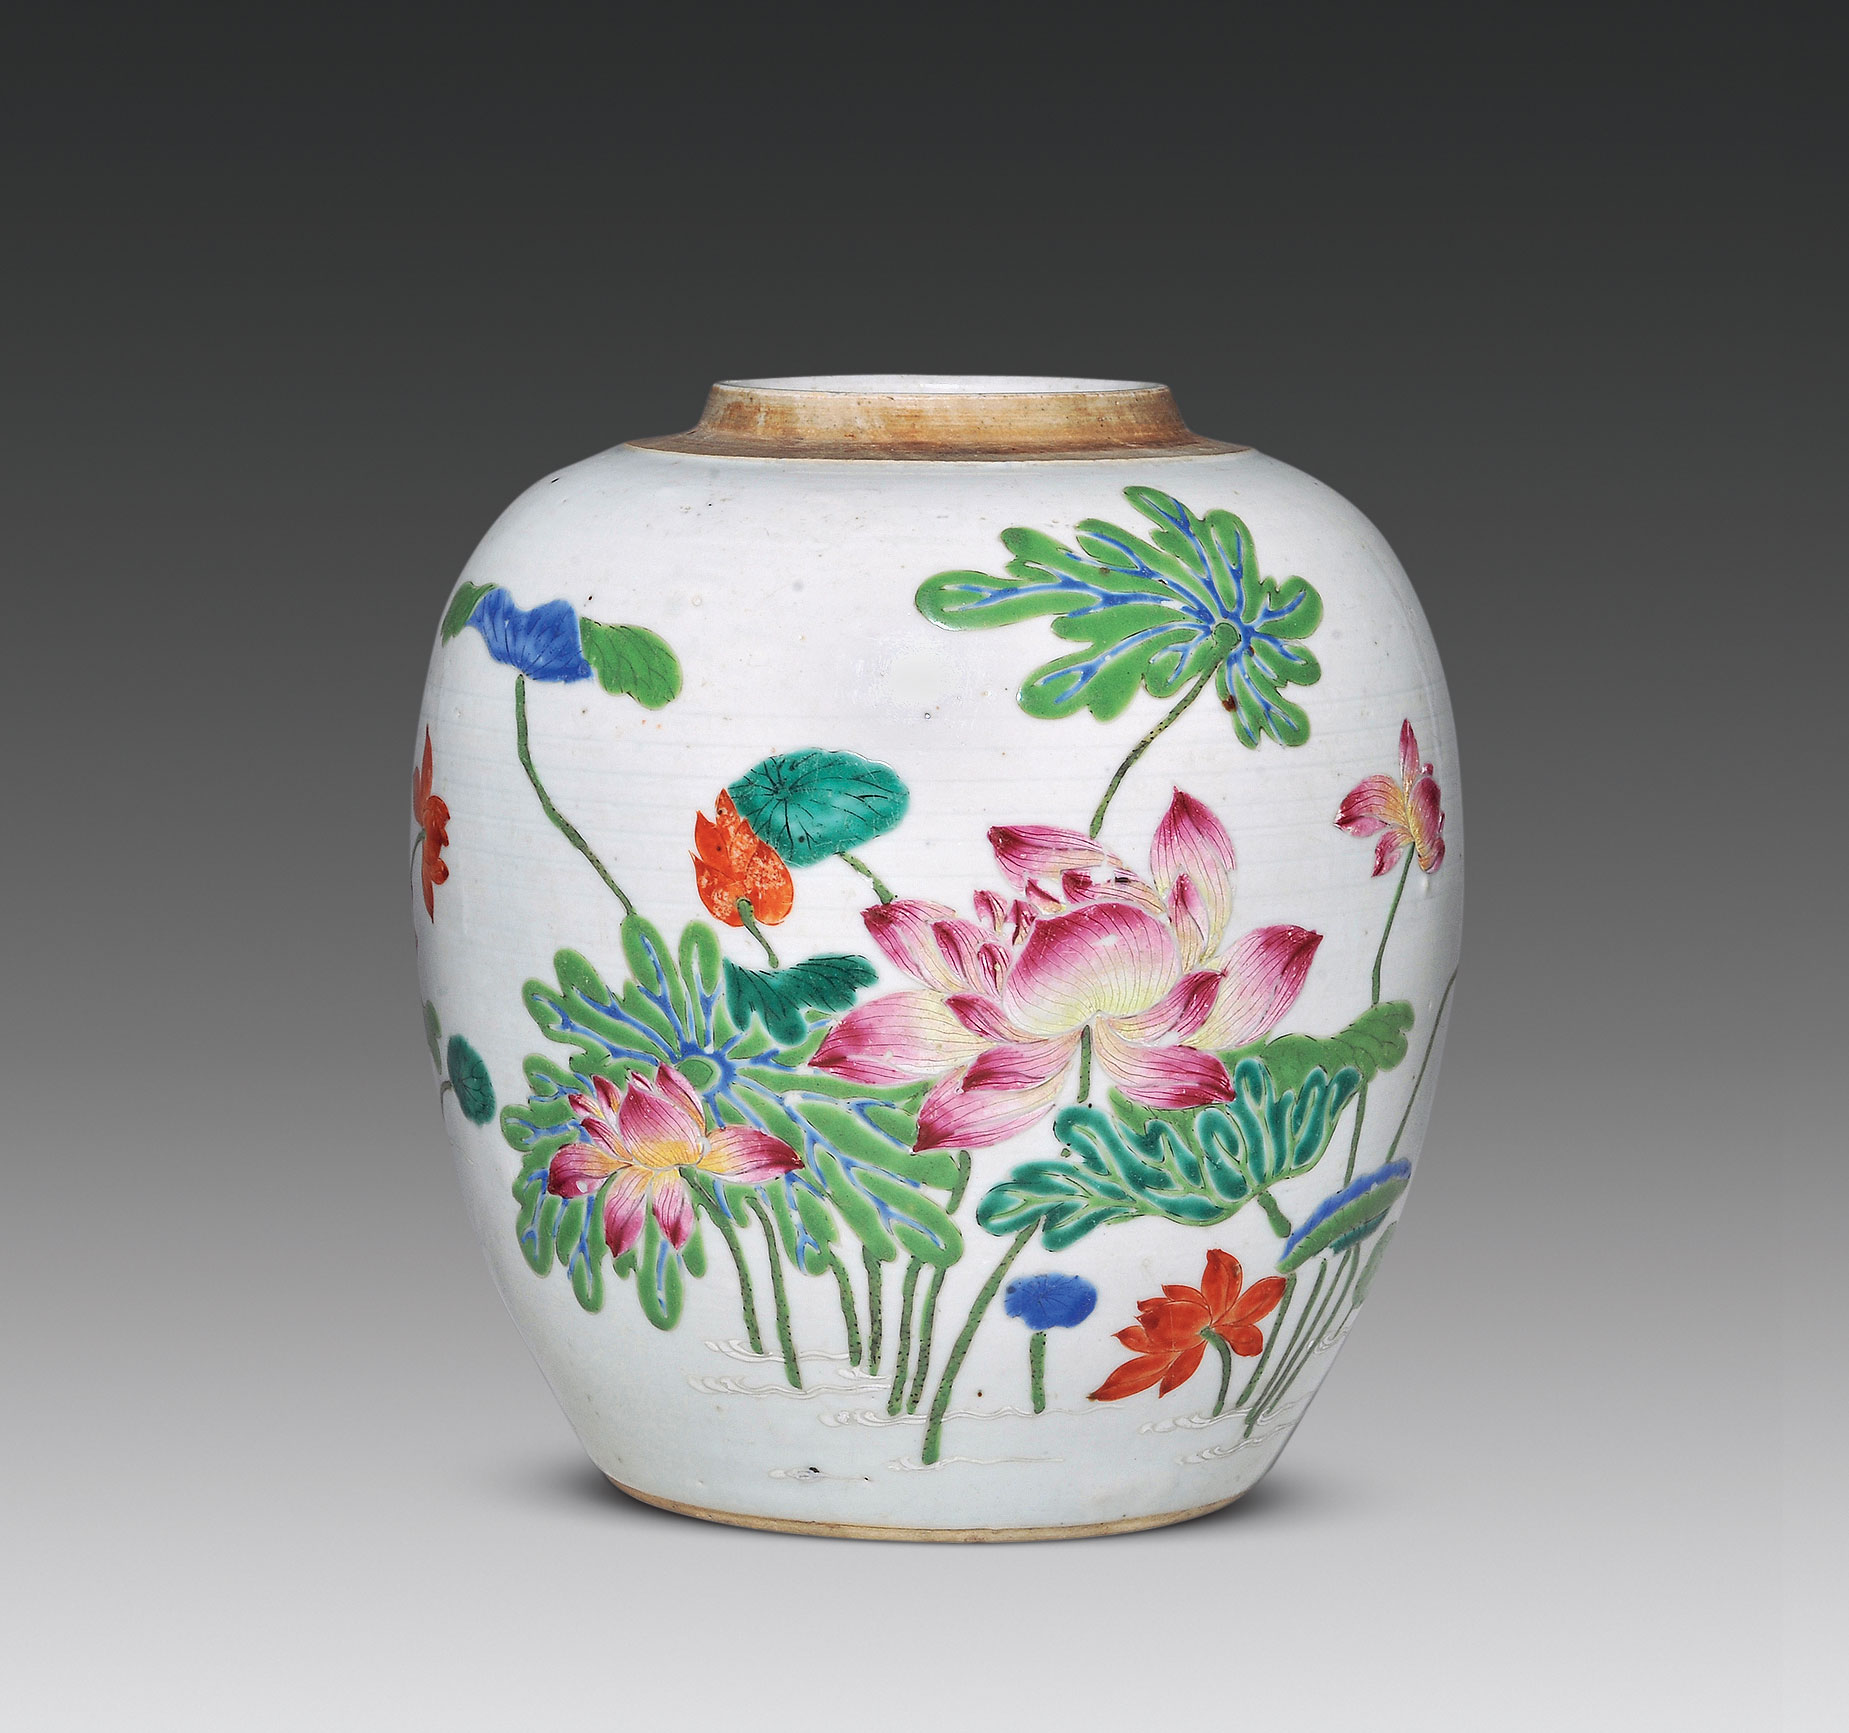 中国古代瓷器器型大全 瓷器爱好者的收藏宝典_ 文化产业网